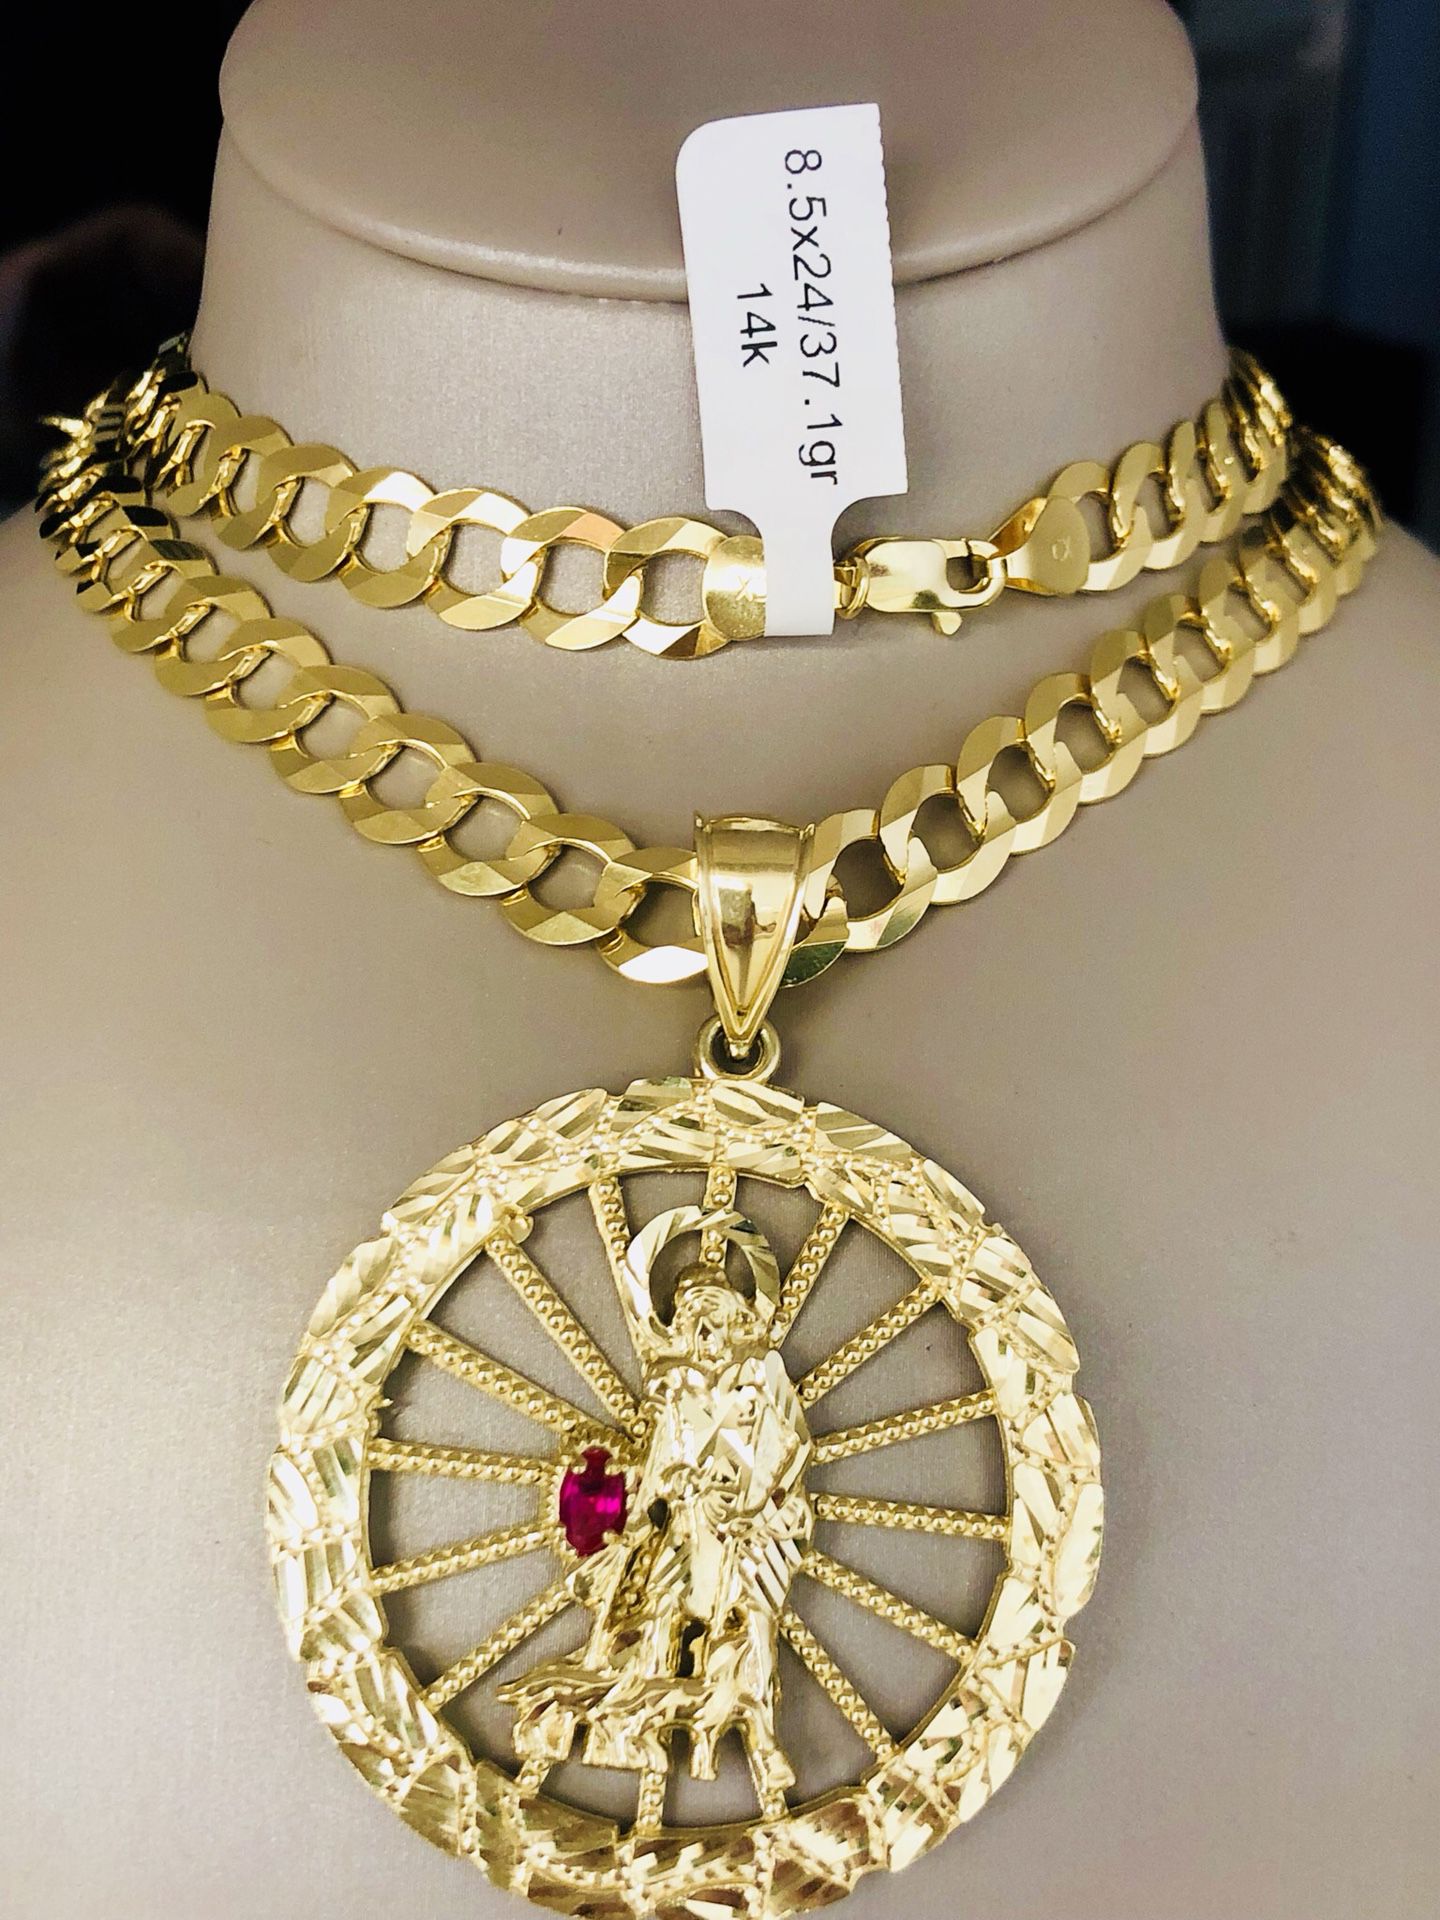 Cadena Gucci de oro 14k $ 1200.00 for Sale in Miami, FL - OfferUp